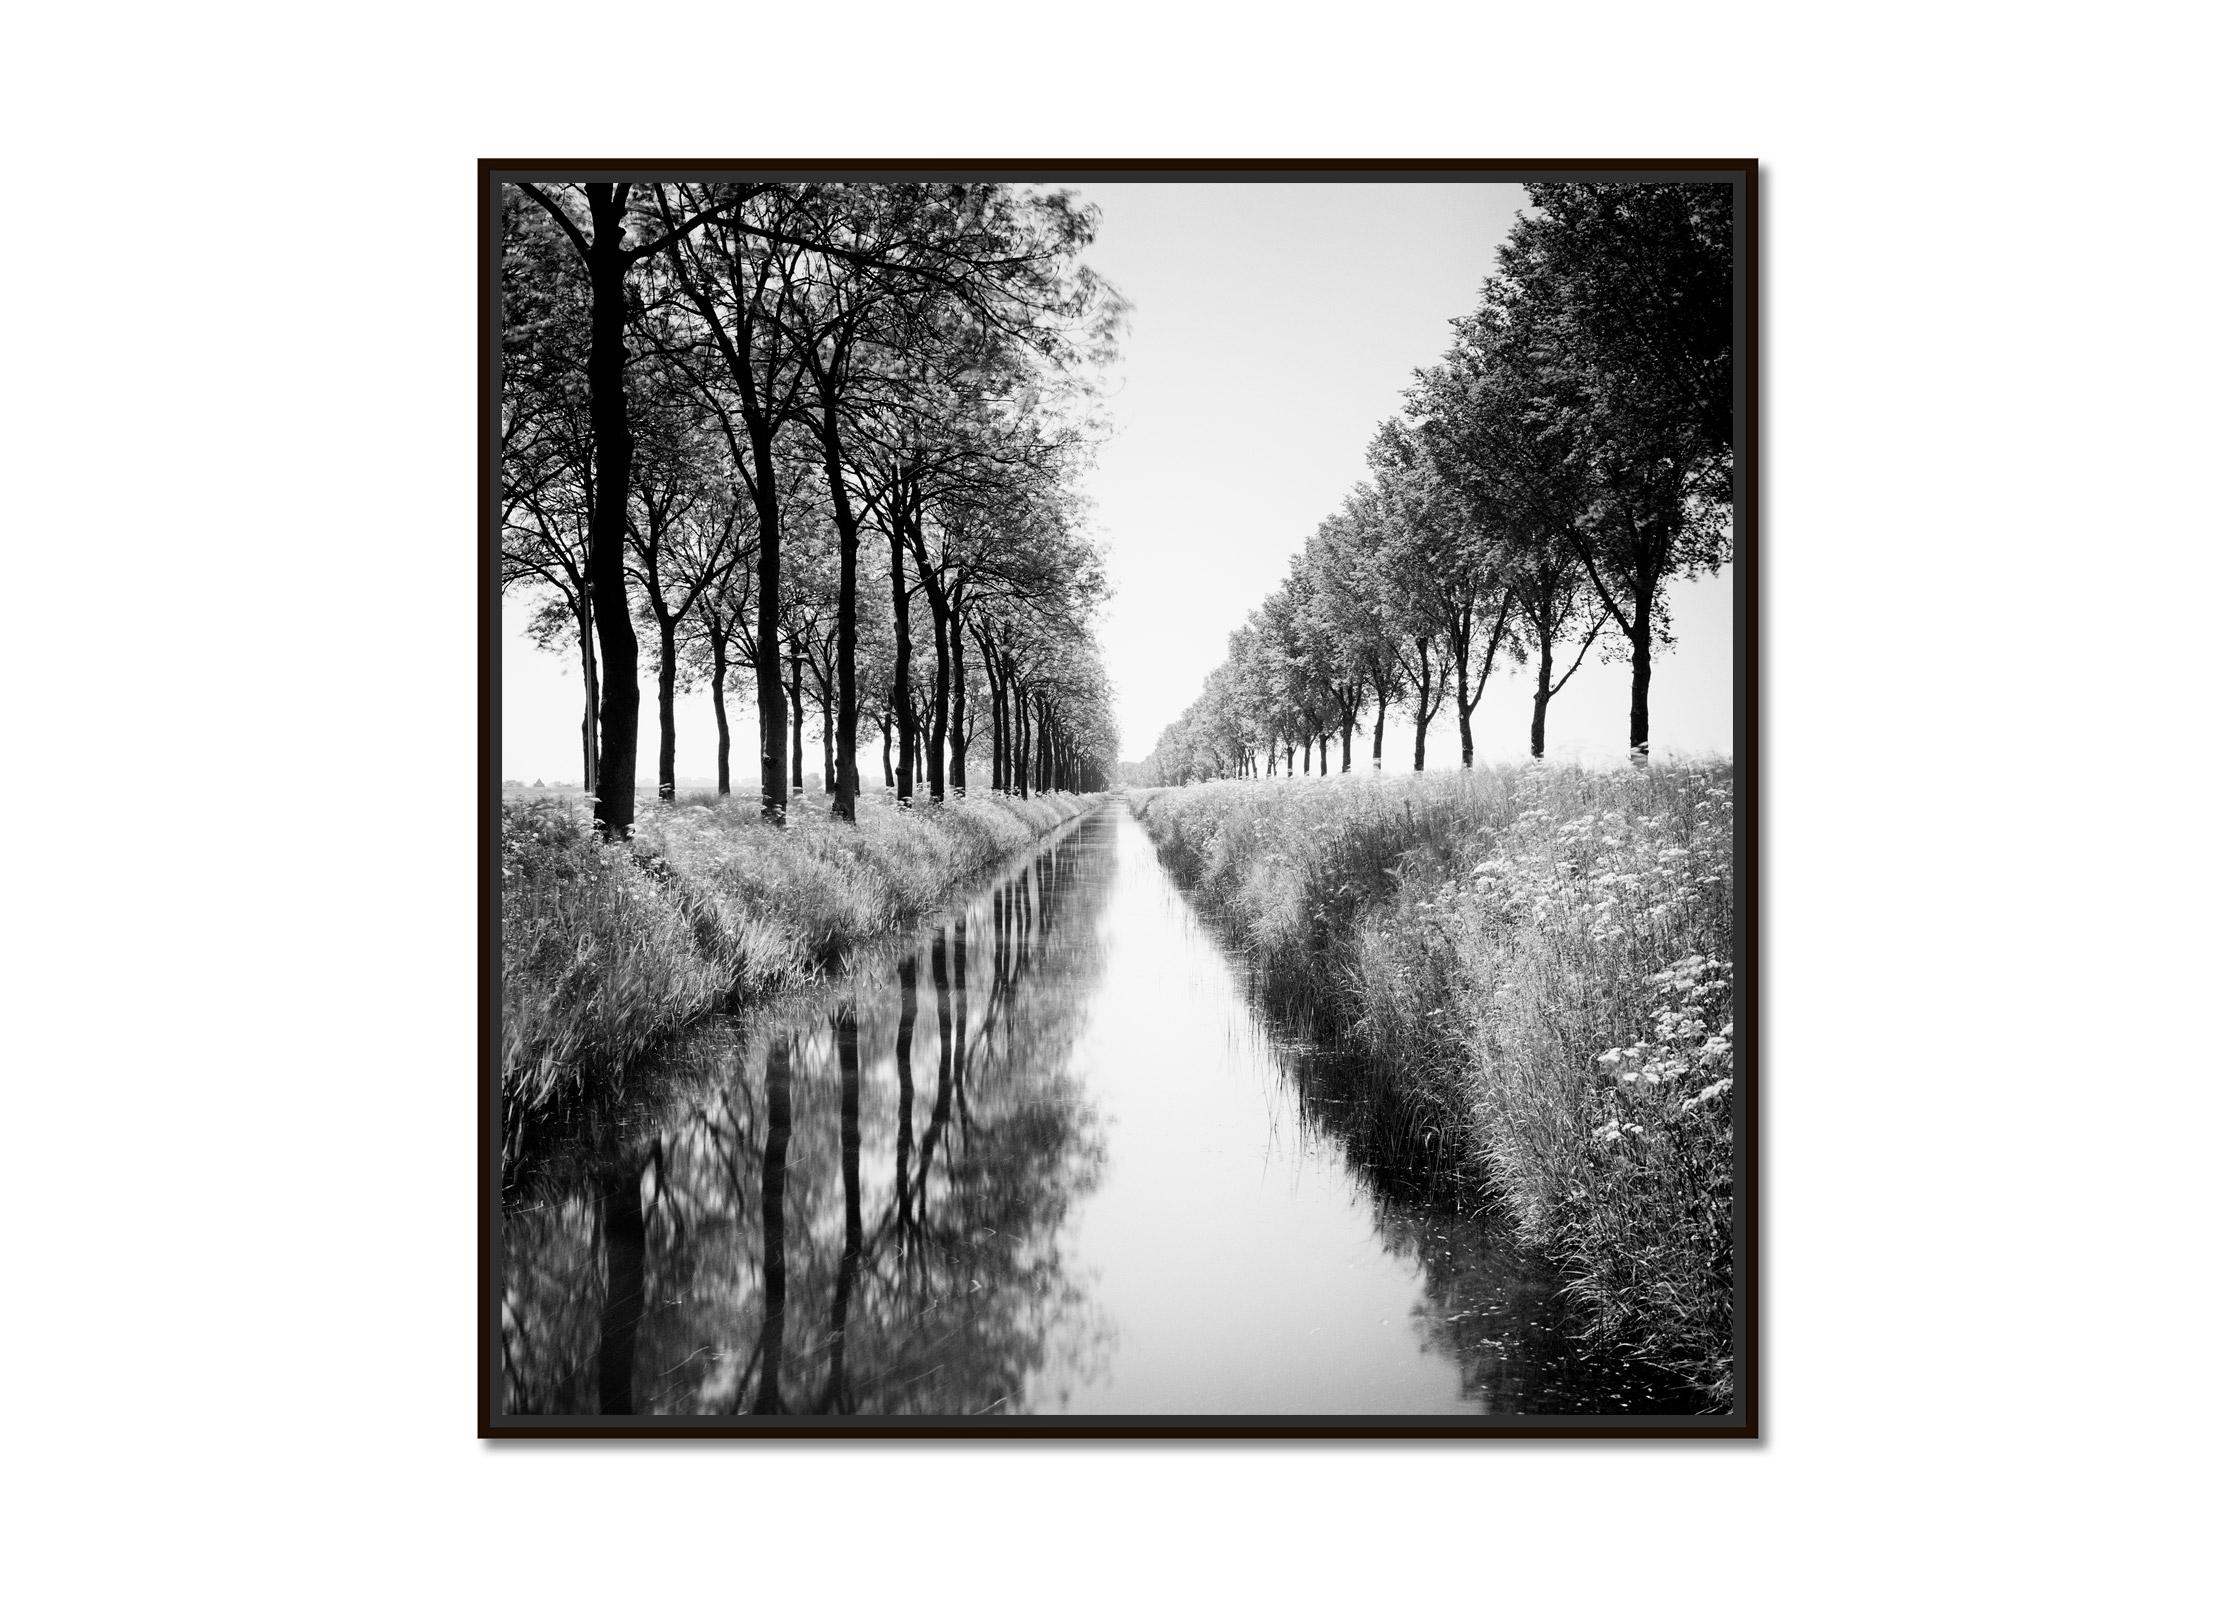 Gracht, Tree Avenue, Wasserspiegelung, Schwarz-Weiß-Fotografie-Kunstdruck – Photograph von Gerald Berghammer